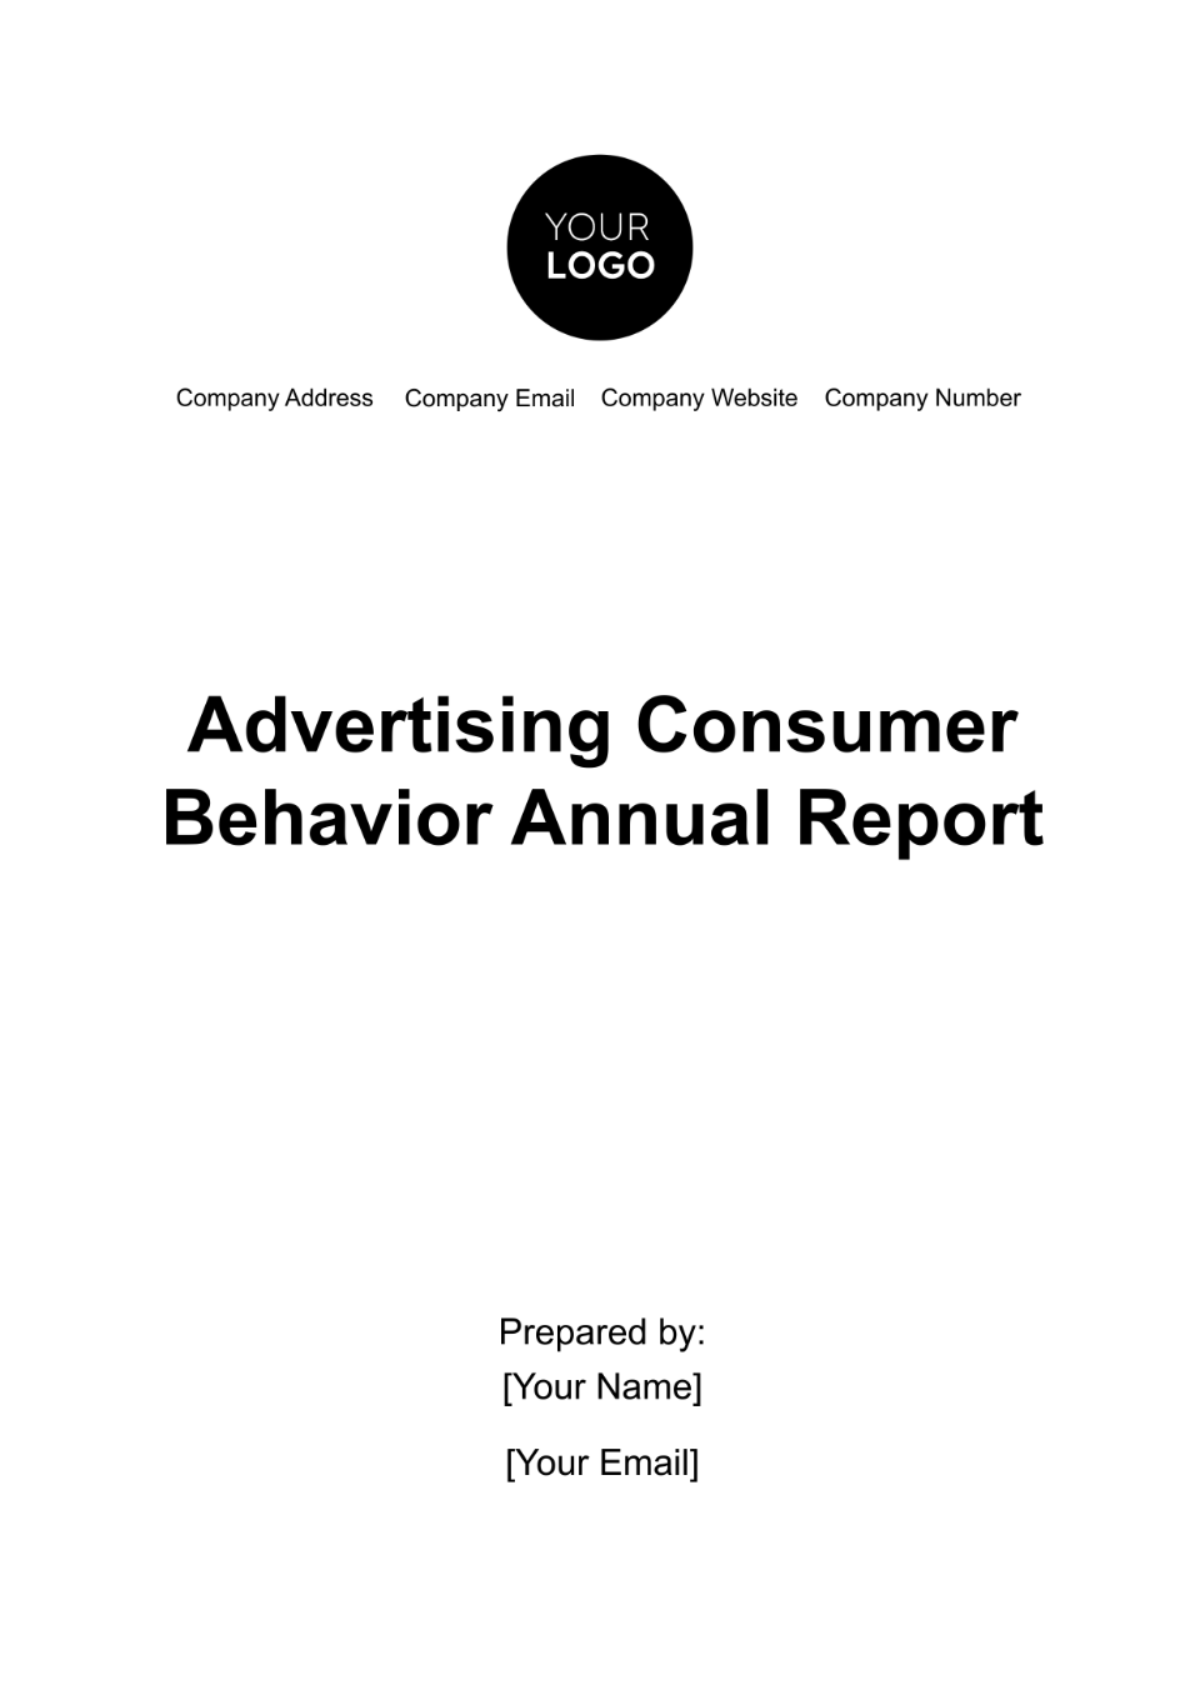 Advertising Consumer Behavior Annual Report Template